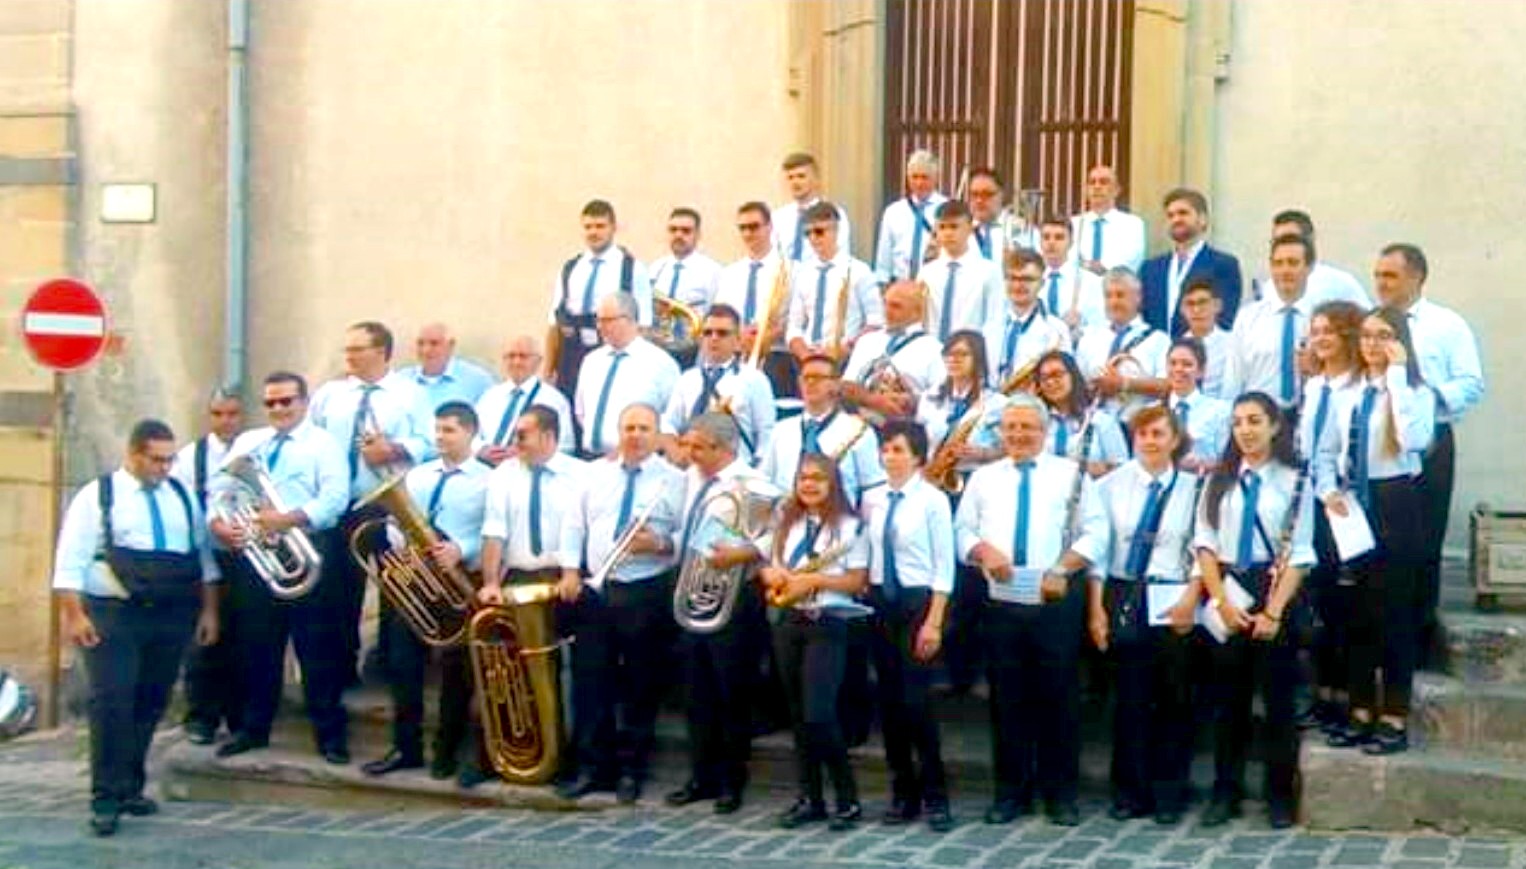 Francavilla di Sicilia: la rinascita del glorioso Corpo Bandistico “Vincenzo Bellini”